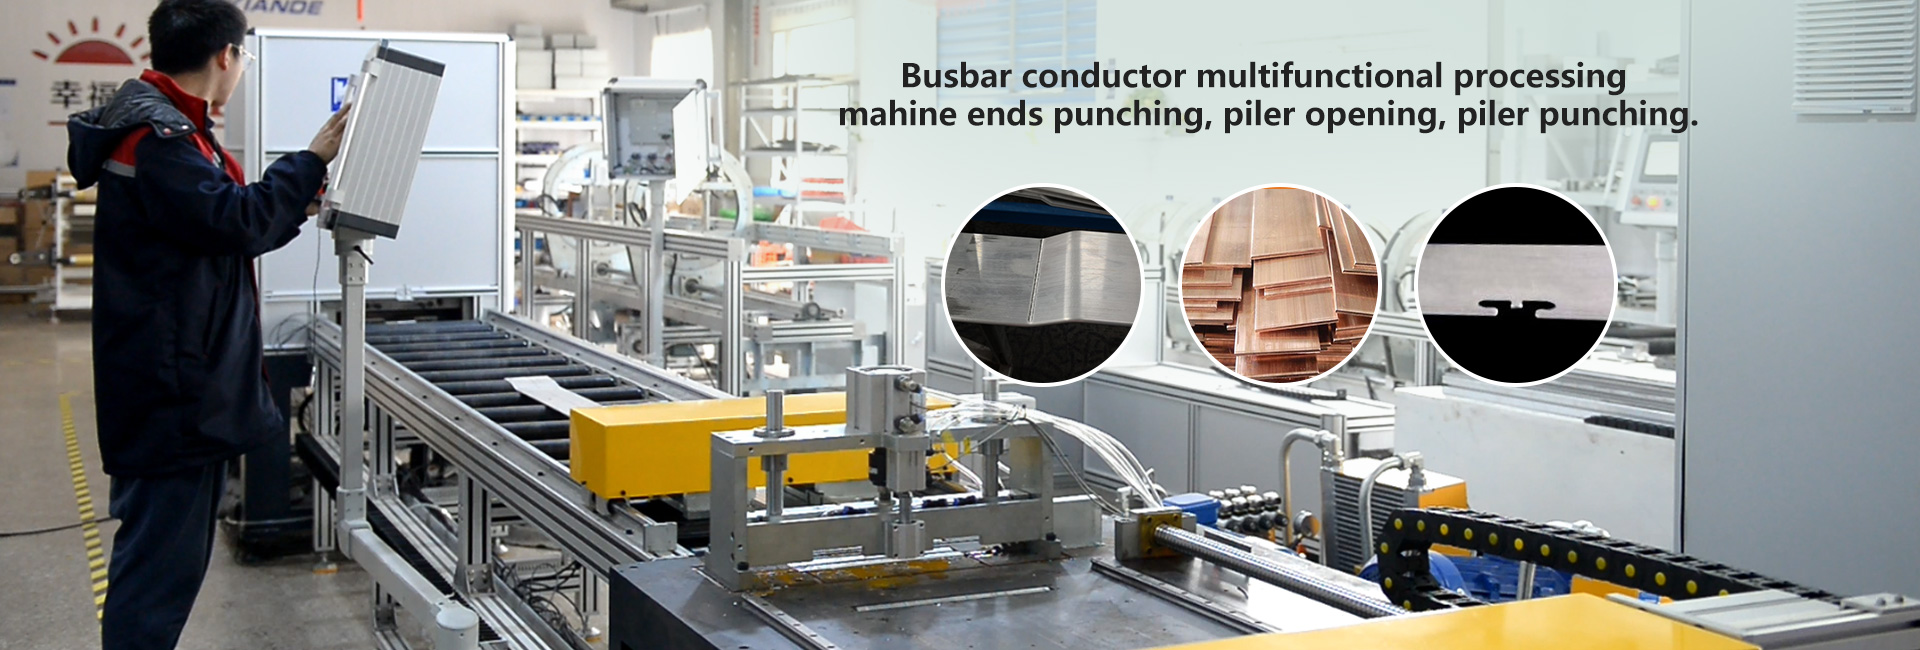 Busbar conductor processing machine